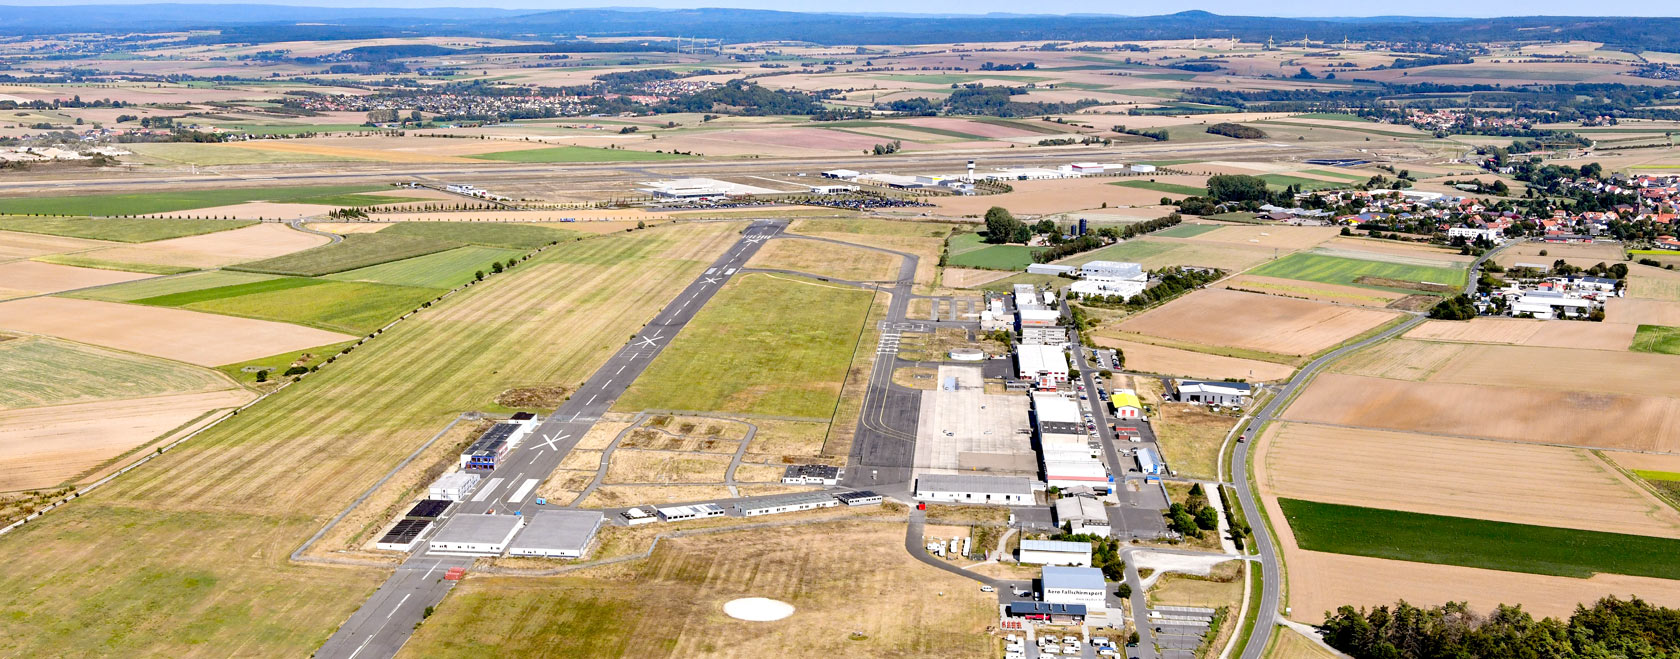 Gewerbegebiet, Industriegebiet: Gewerbepark Kassel Airport (Commercial industrial area)